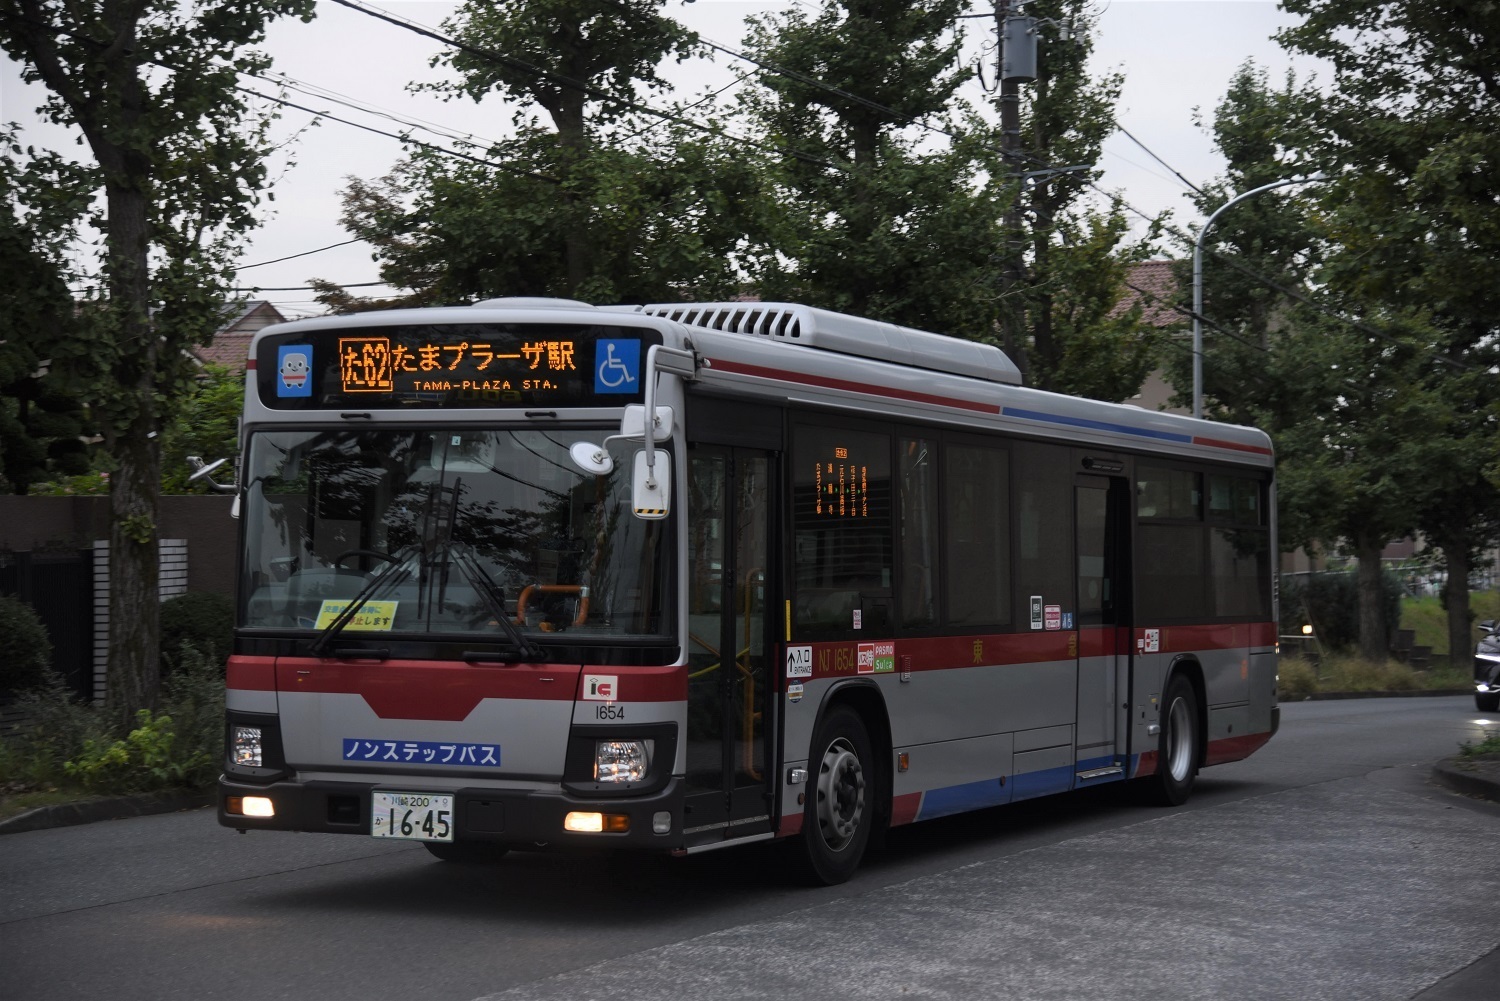 東急バス Nj1654 バス日記